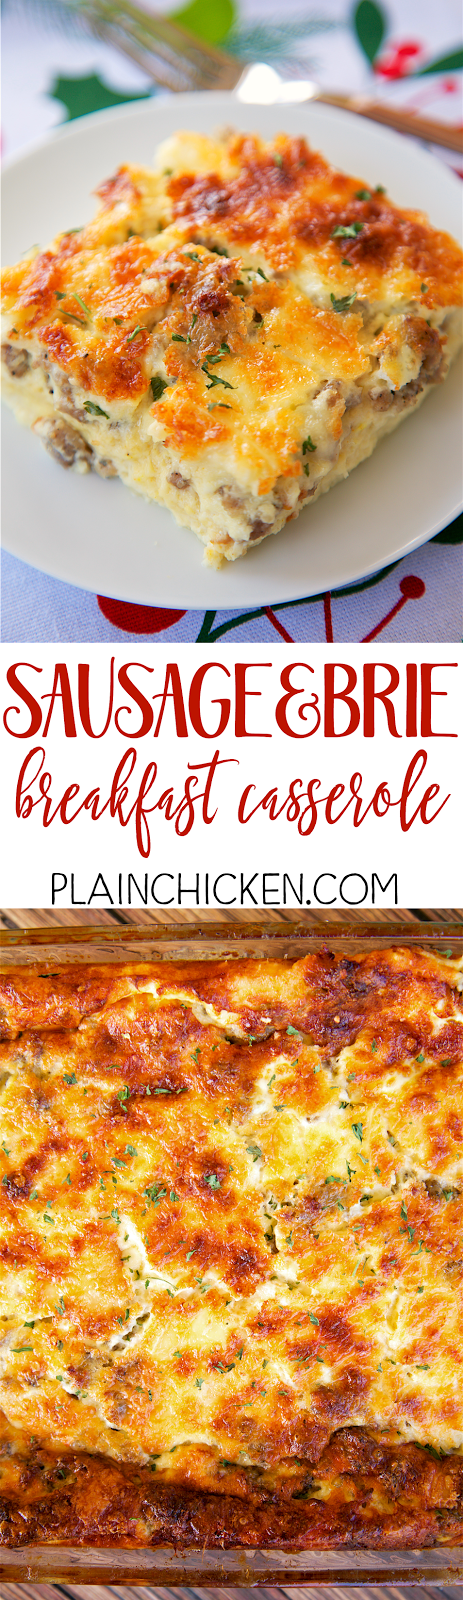 Sausage and Brie Breakfast Casserole | Plain Chicken®